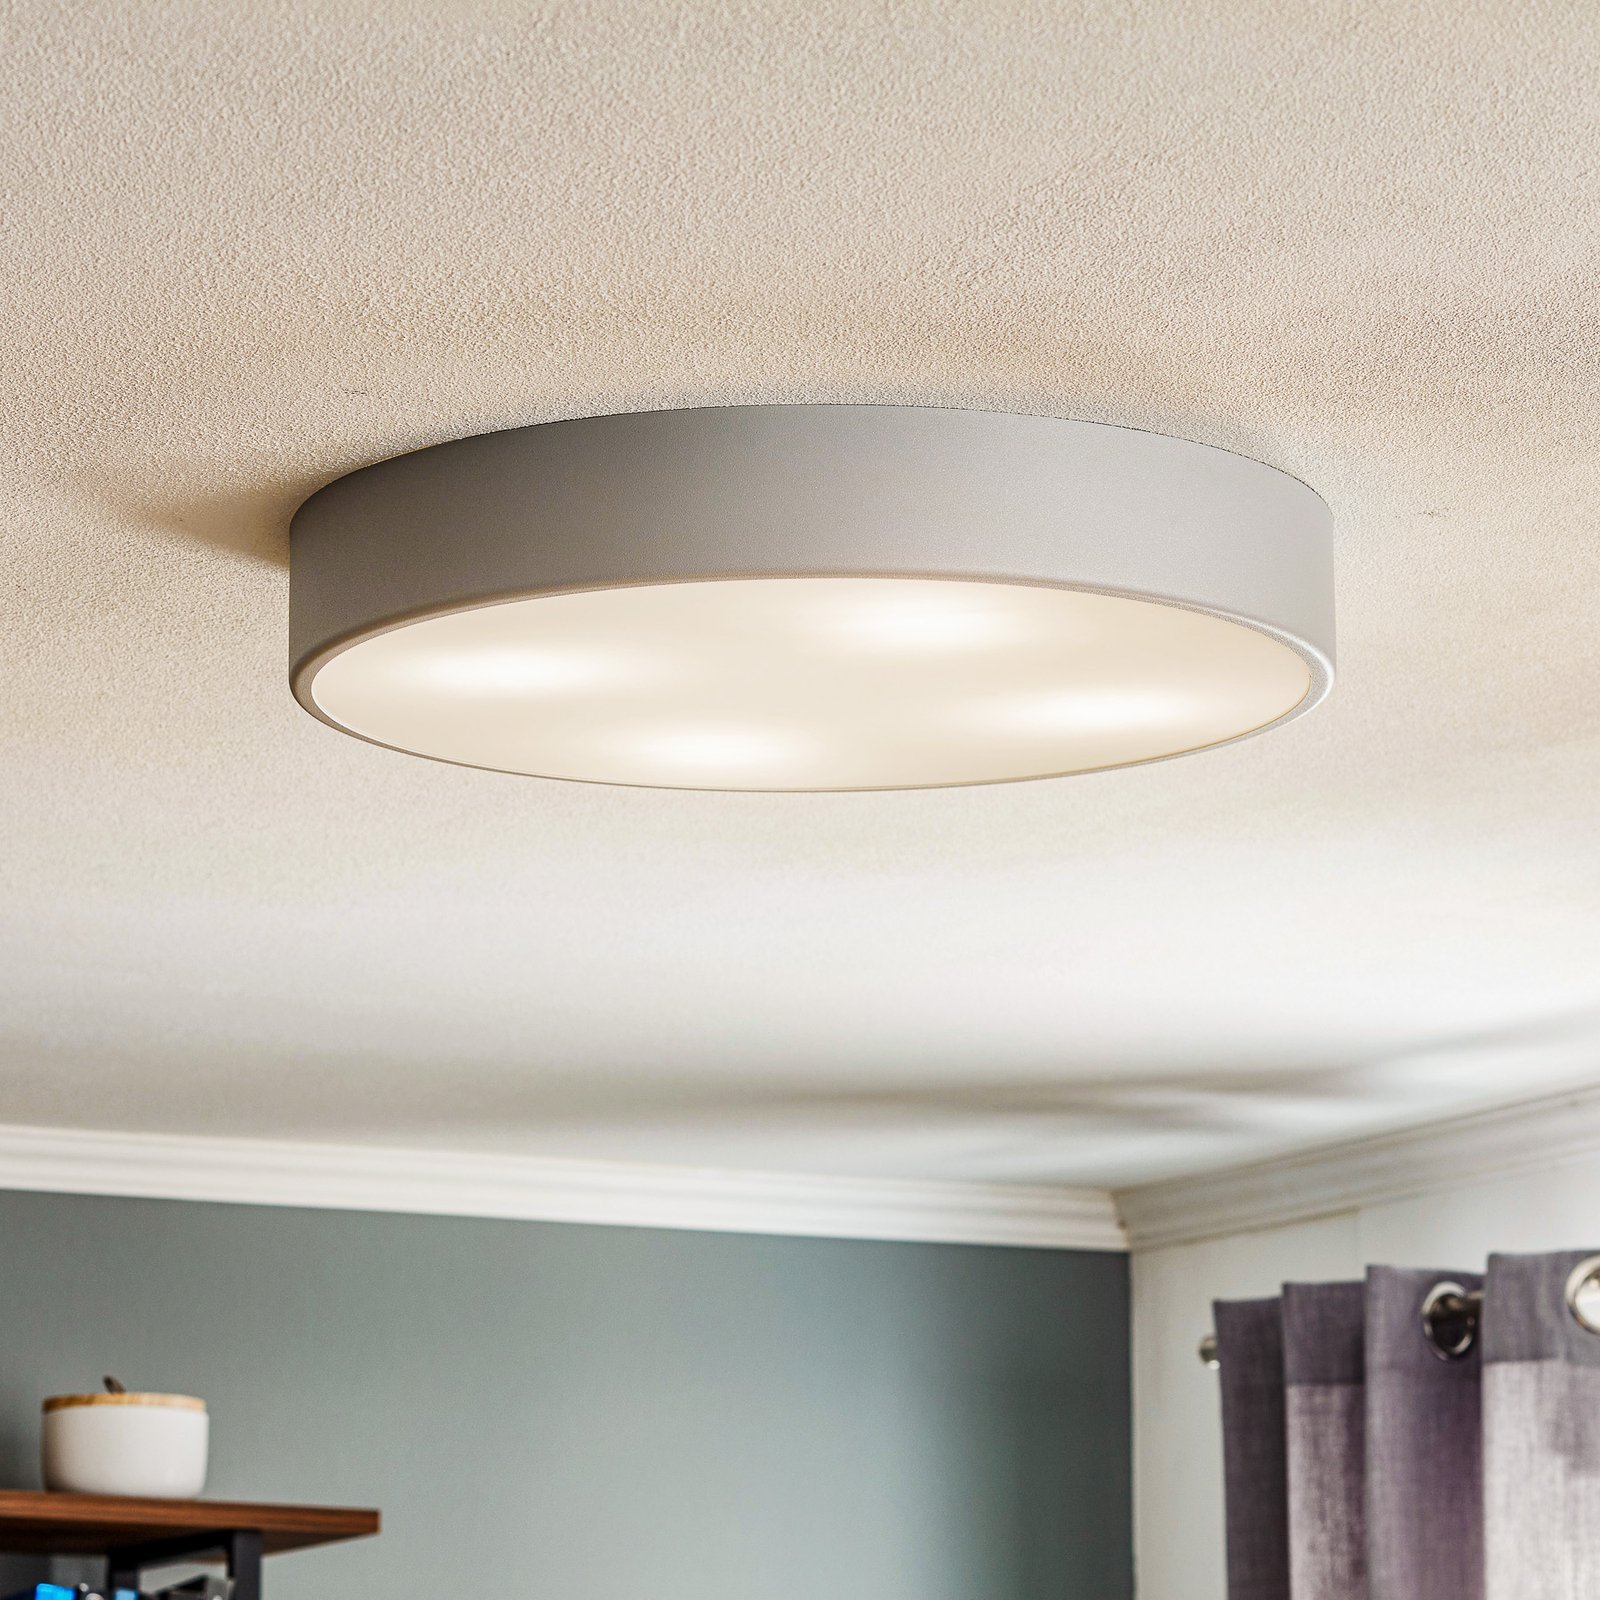 Cleo 500 ceiling light, sensor, Ø 50 cm grey